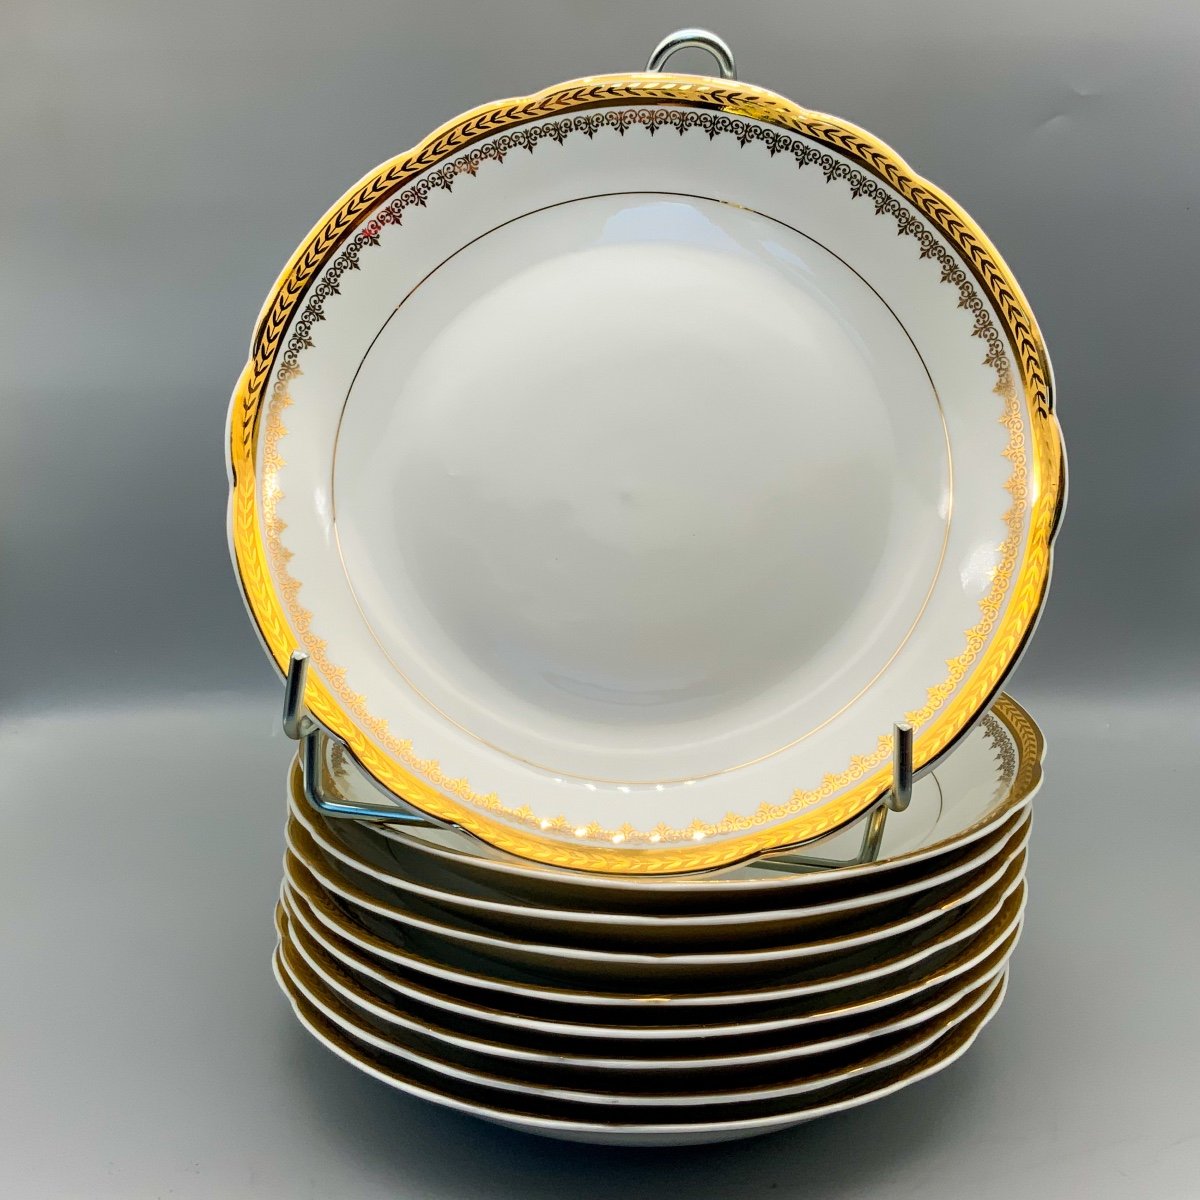 9 Porcelain Soup Plates